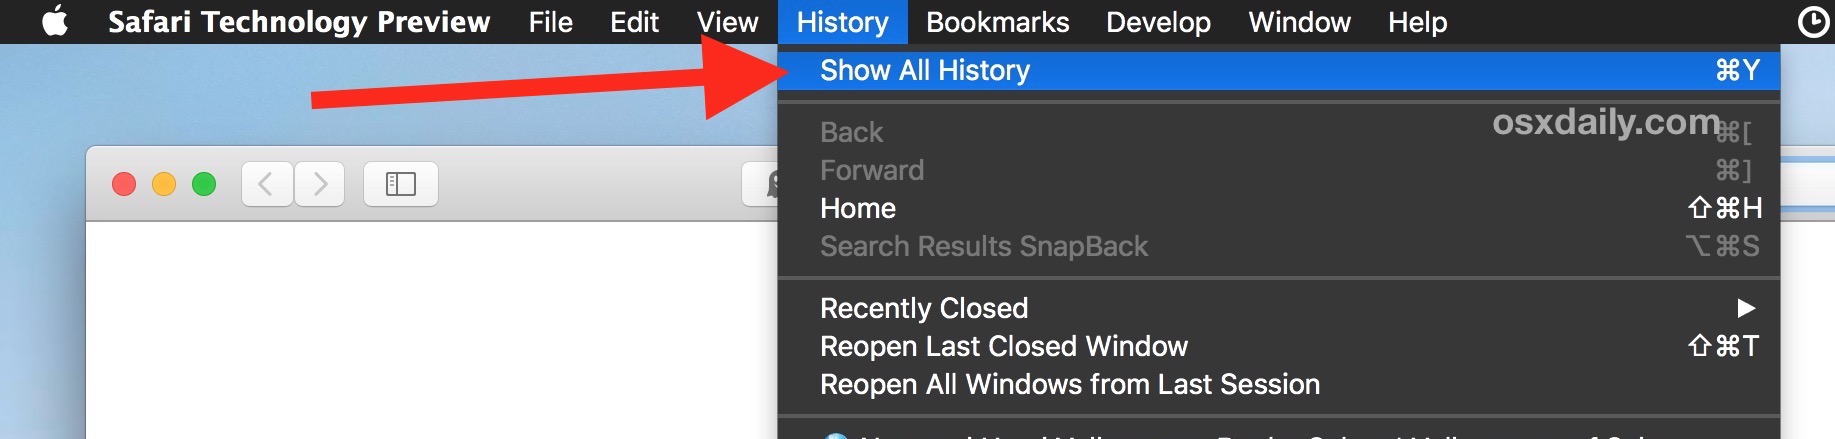 Cómo ver todo el historial de navegación en Safari en Mac